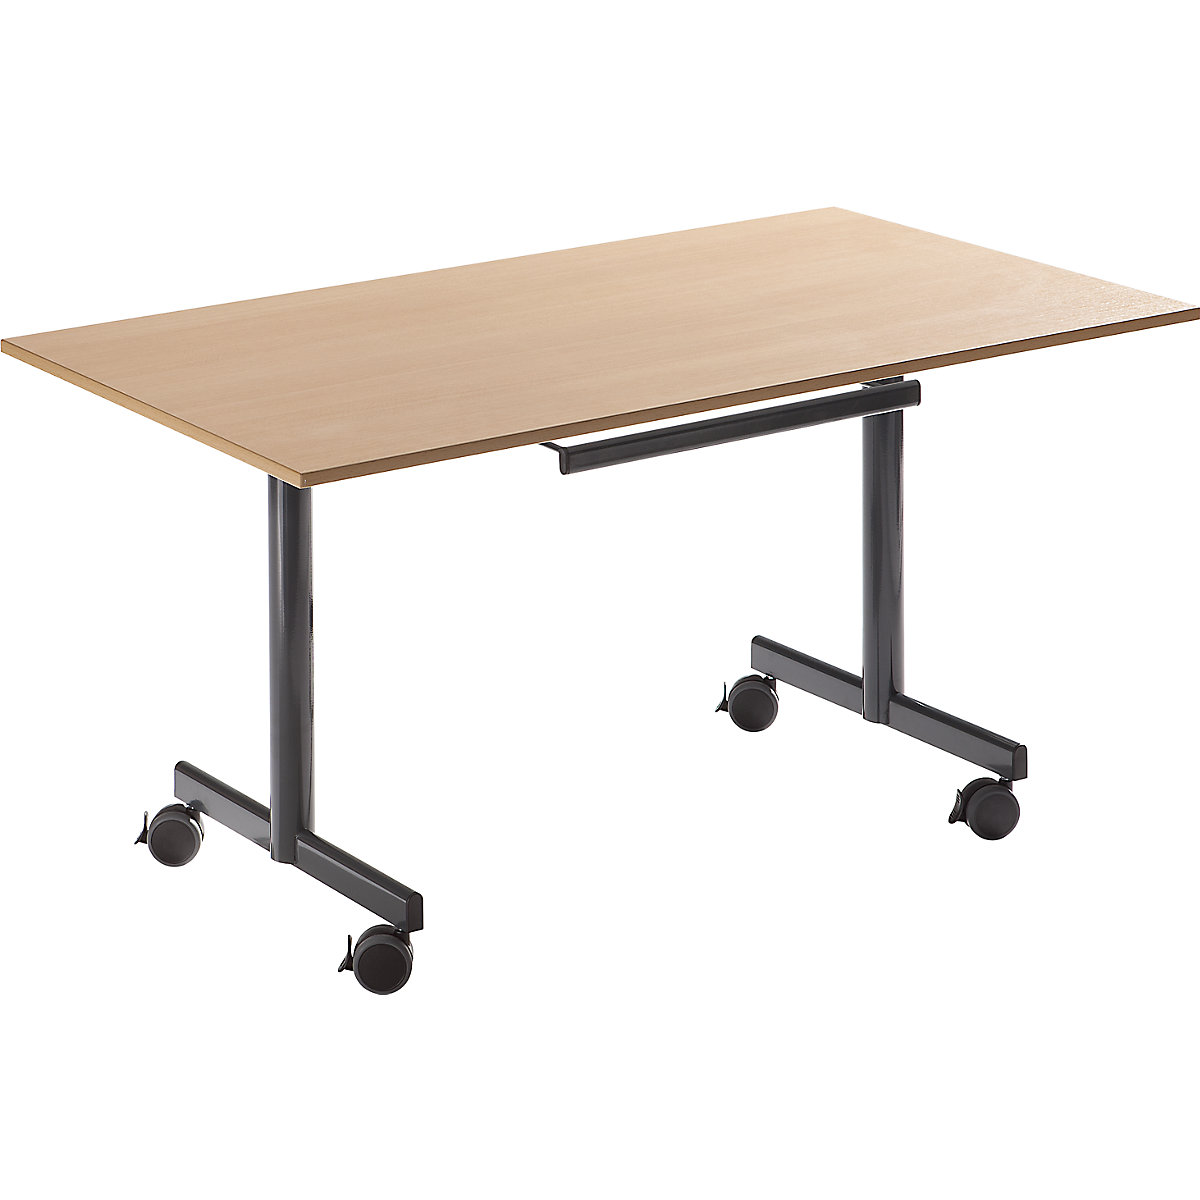 Table mobile à plateau rabattable, h x l x p 720 x 1400 x 800 mm, façon hêtre-3